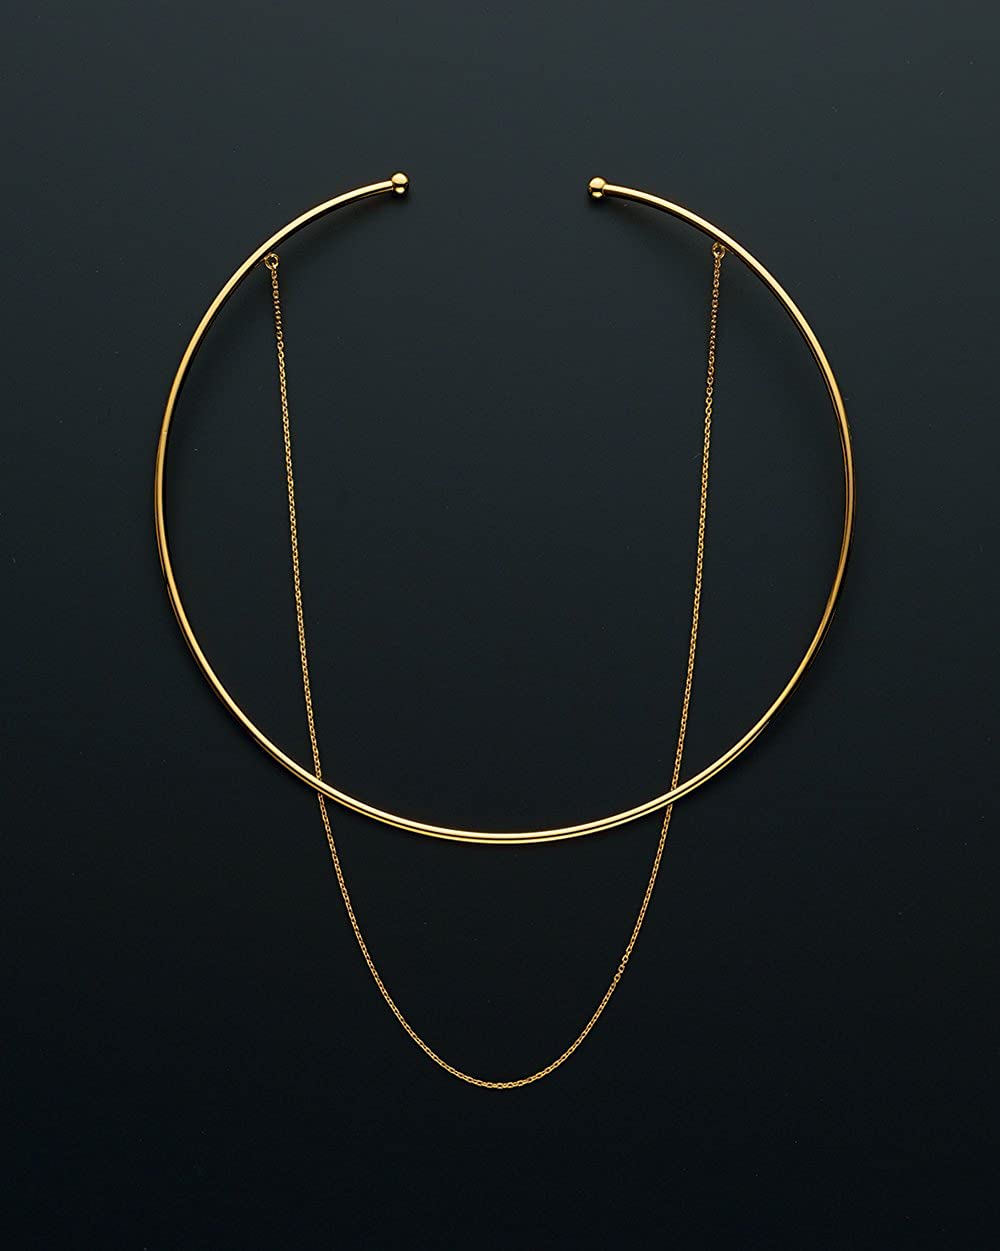 日本代购银镀金双层项圈项链组合硬朗与温柔的组合层次感显脖子长-封面